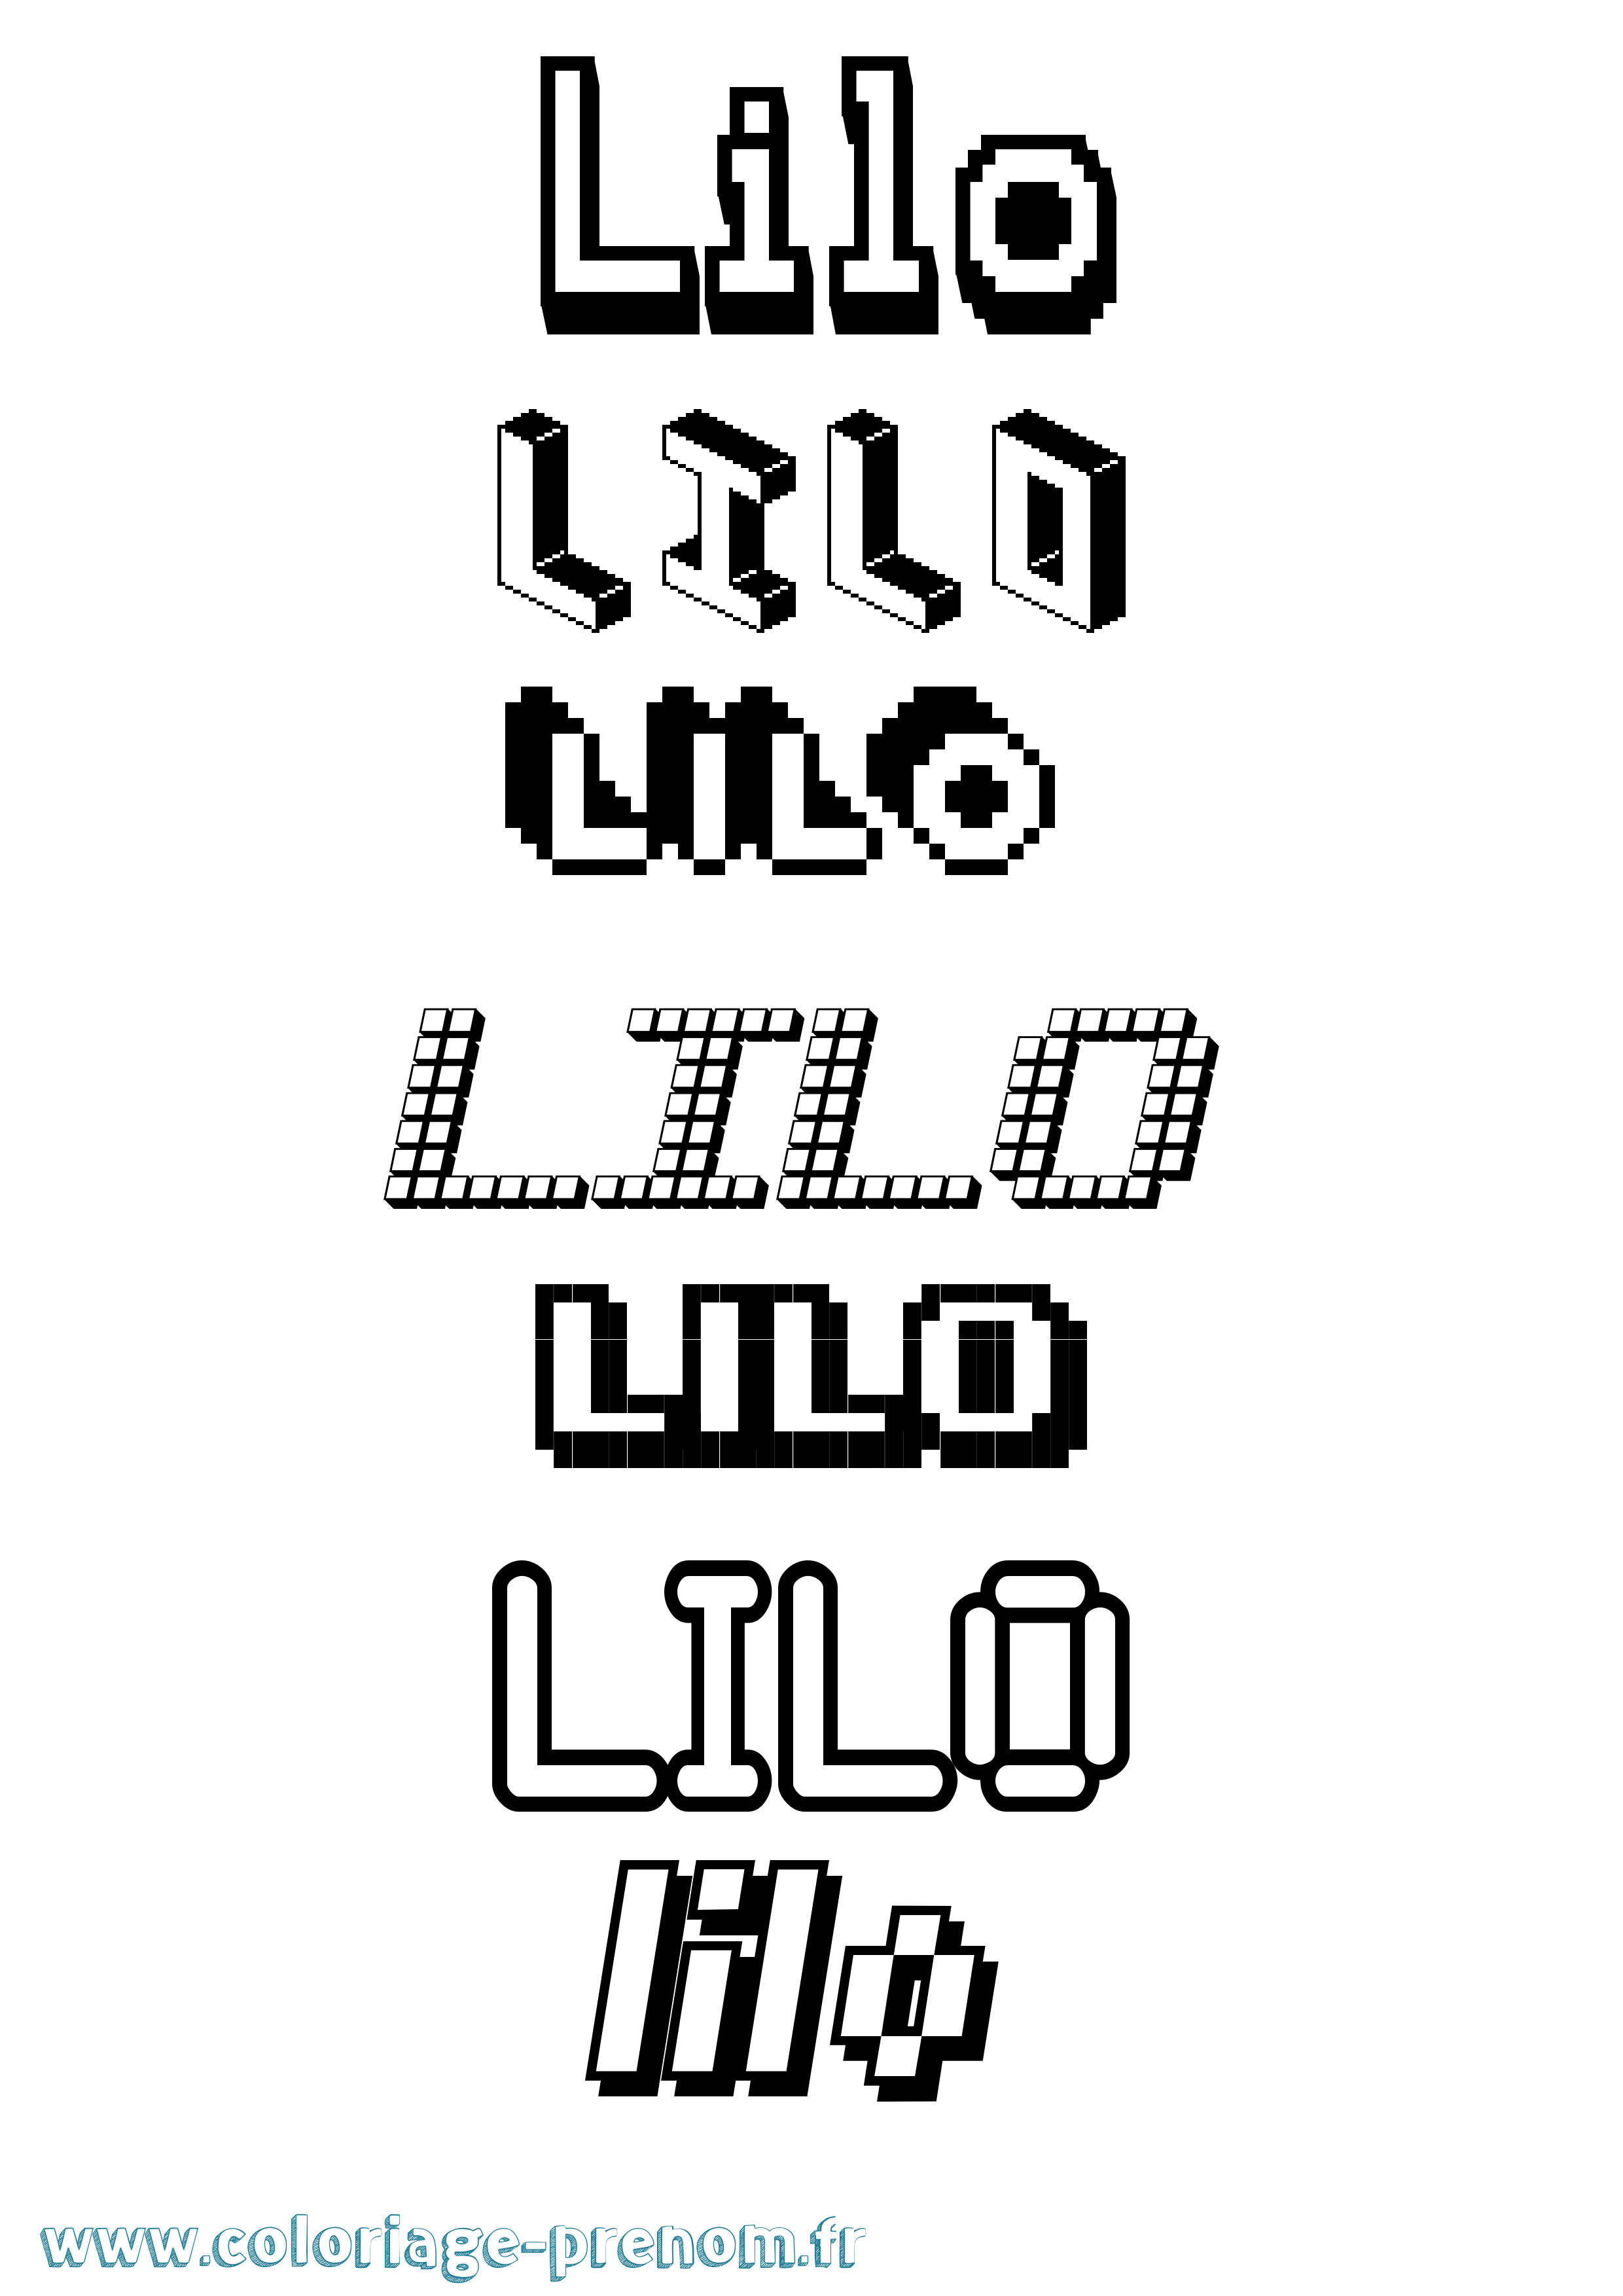 Coloriage prénom Lilo Pixel